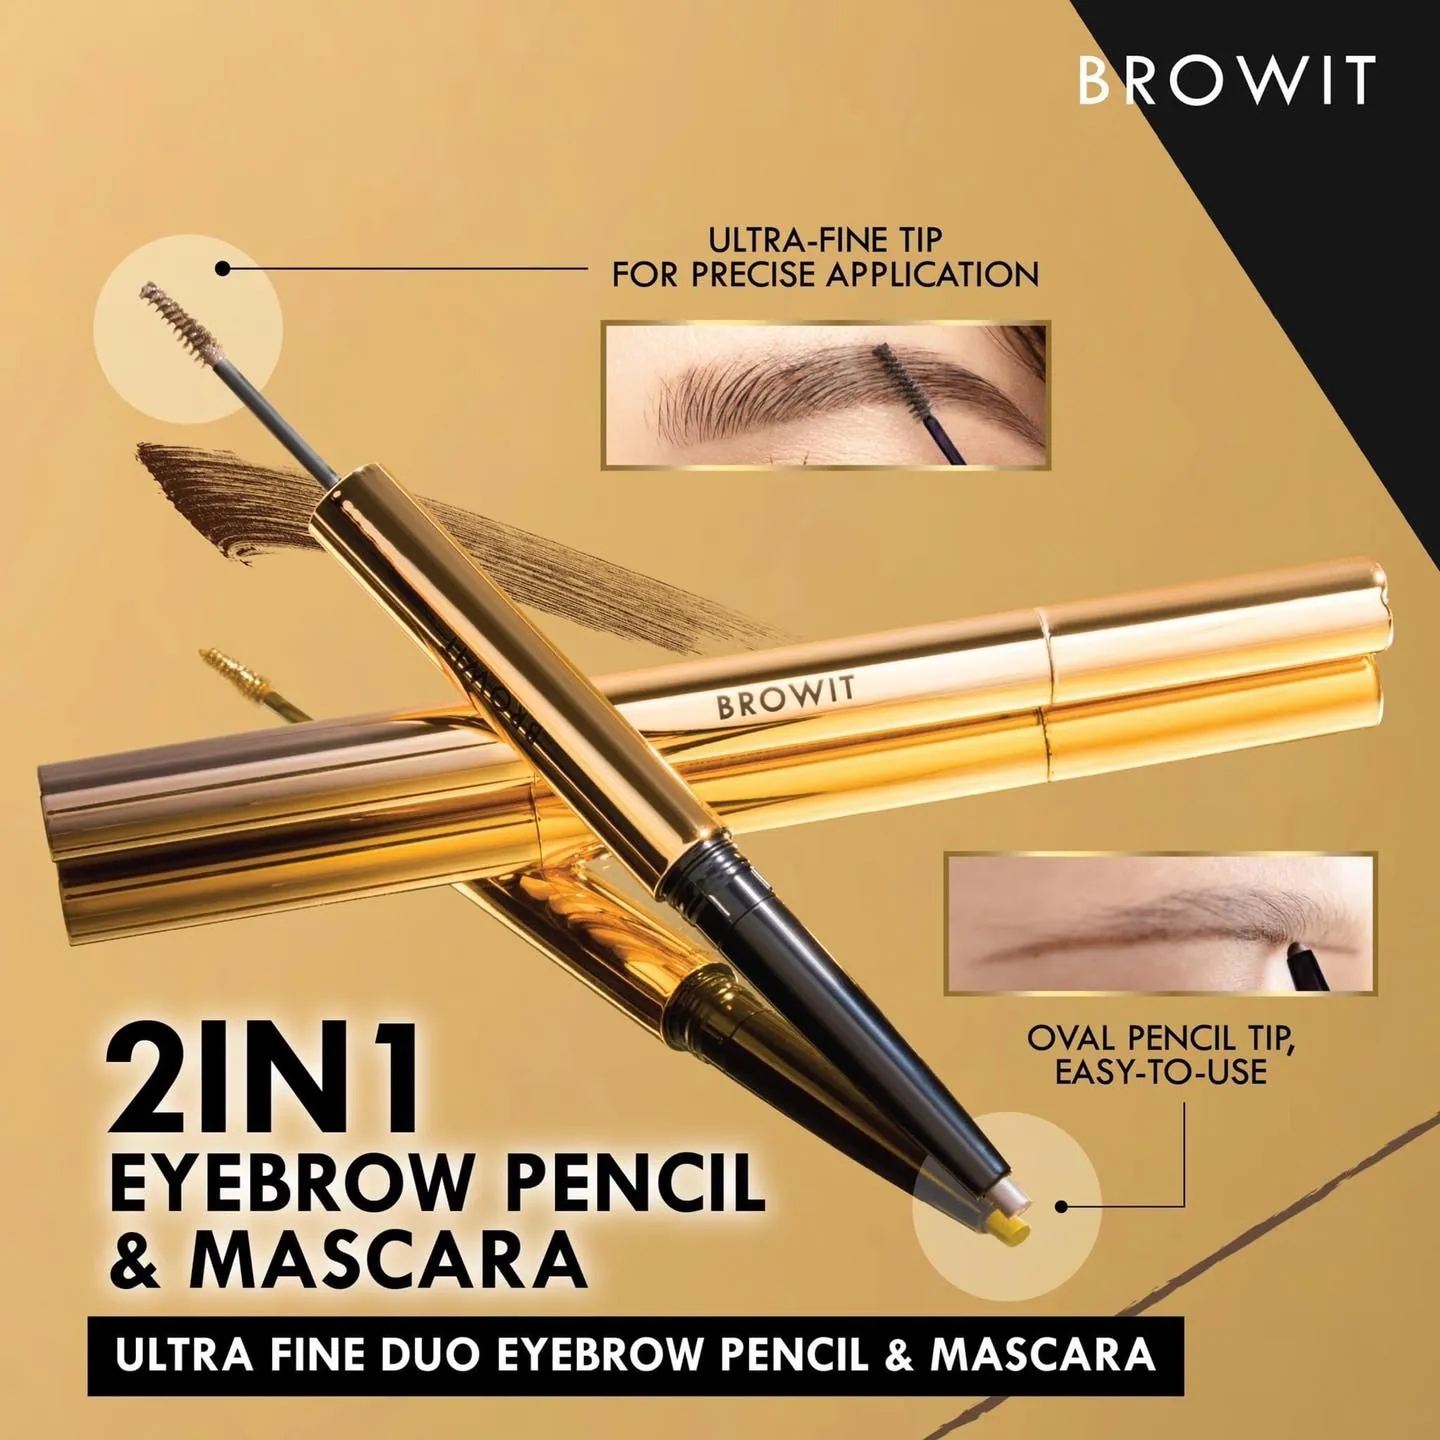 บราวอิท น้องฉัตร 2in1 ดินสอเขียนคิ้ว + มาสคาร่าคิ้ว เขียนง่าย 0.16g+1.26g Browit  Ultra Fine Duo Eyebrow Pencil & Mascara | Lazada.co.th